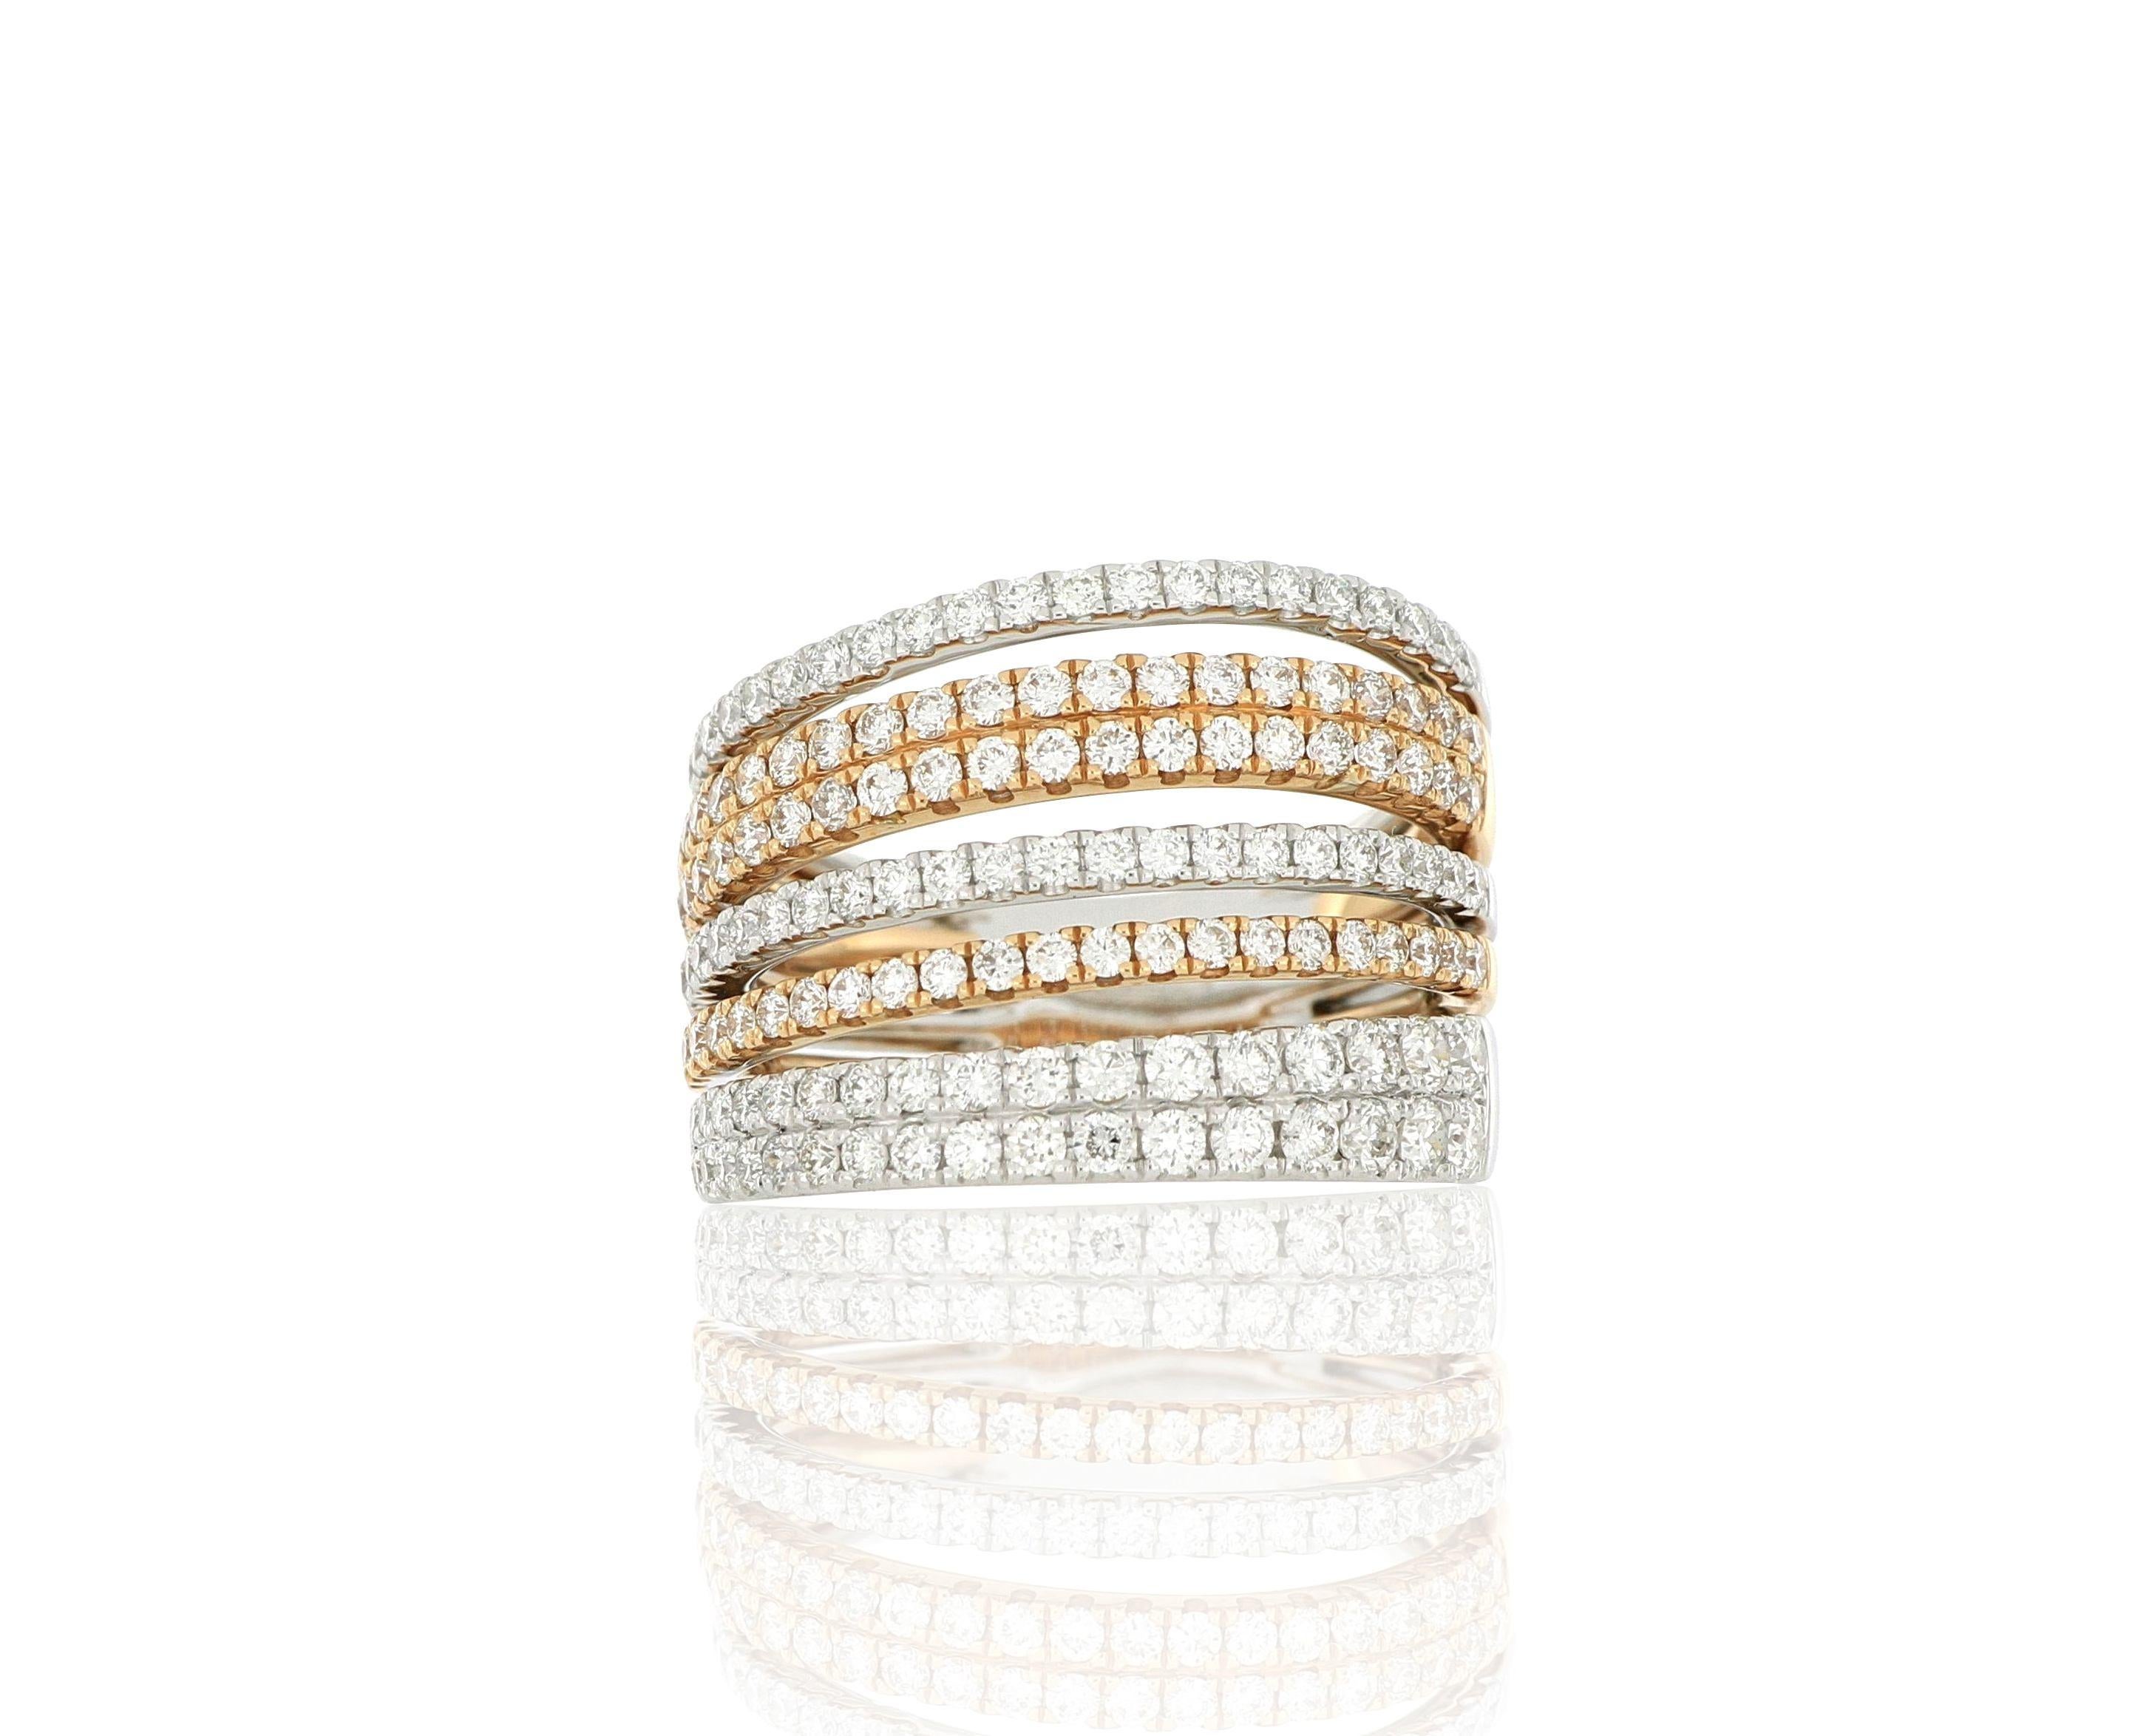 Ein stilvoller und eleganter Diamantring, bestehend aus Brillanten mit einem Gewicht von ca. 1,56 Karat, gefasst in 18 Karat Weiß- und Roségold.
O'Che 1867 ist bekannt für seine hochwertigen Schmuckkollektionen mit fabelhaftem Design. Unsere